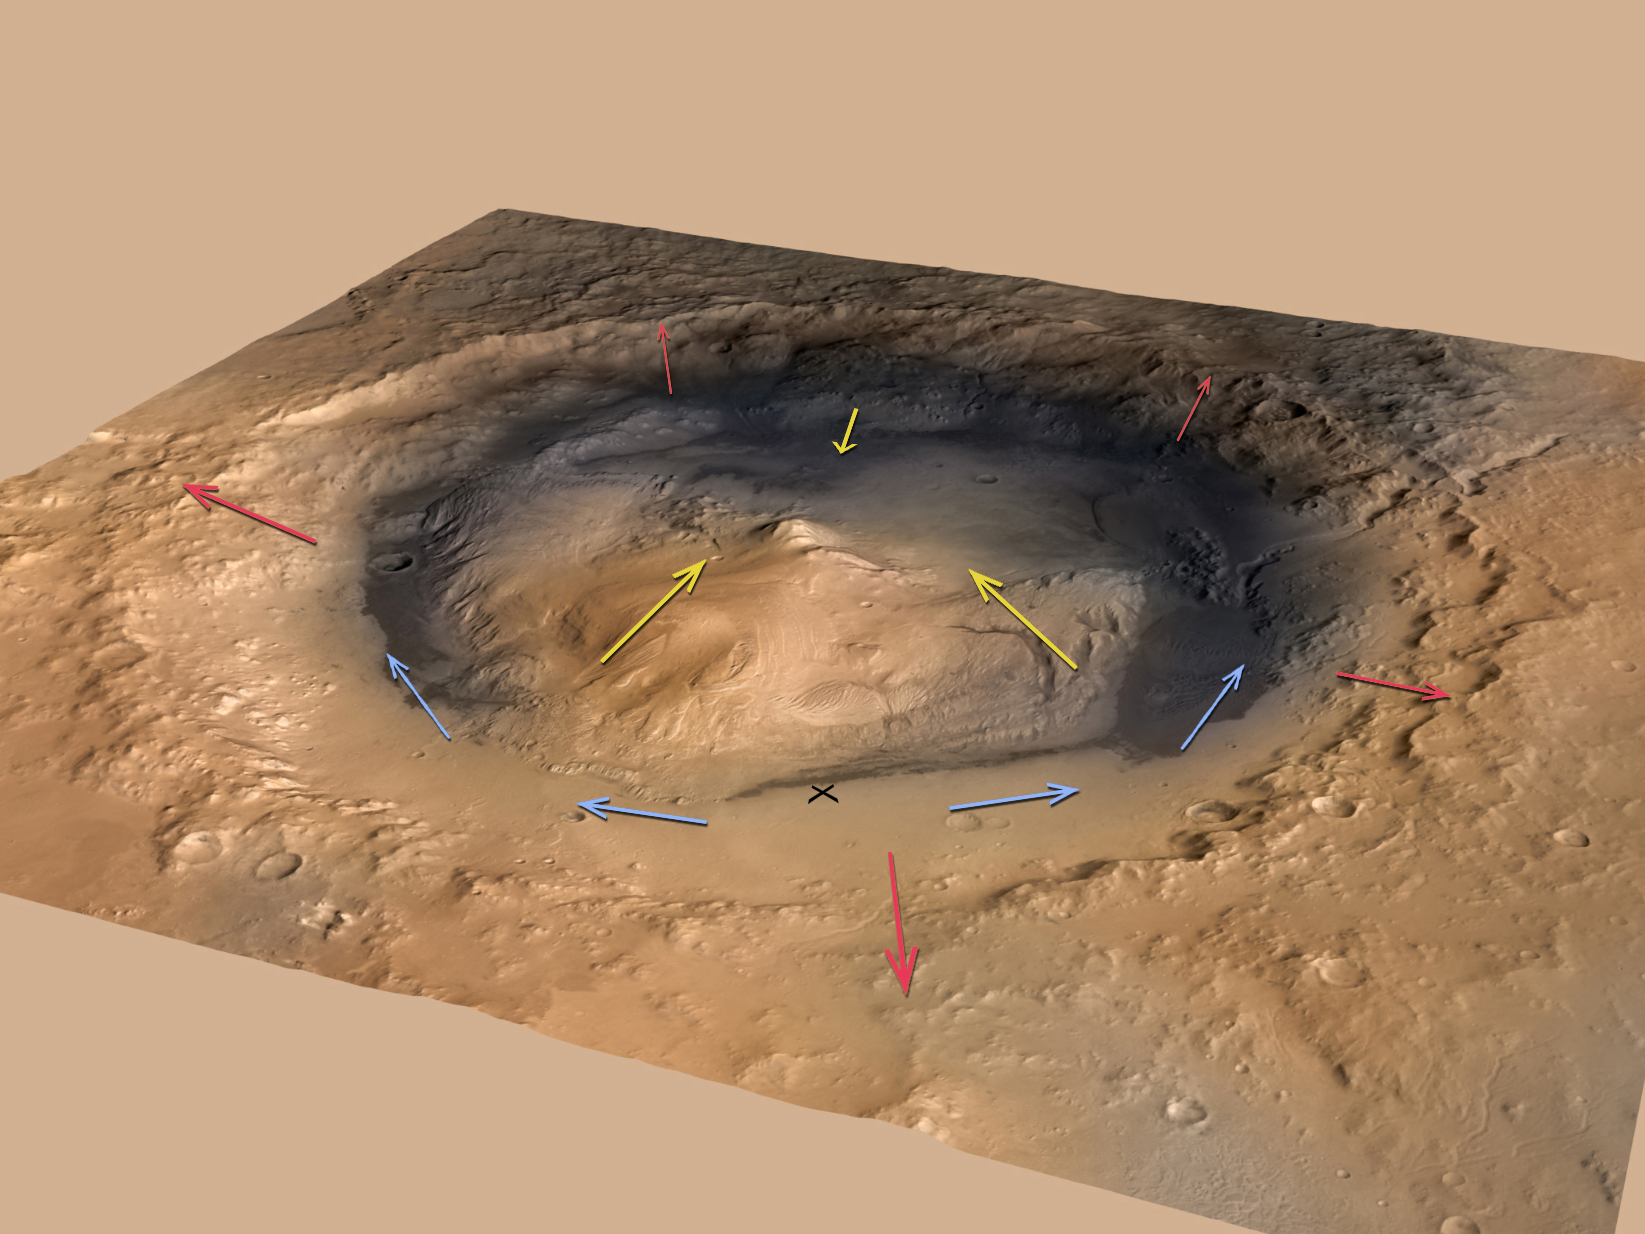 Направление ветров в кратере Гейл удивило учёных